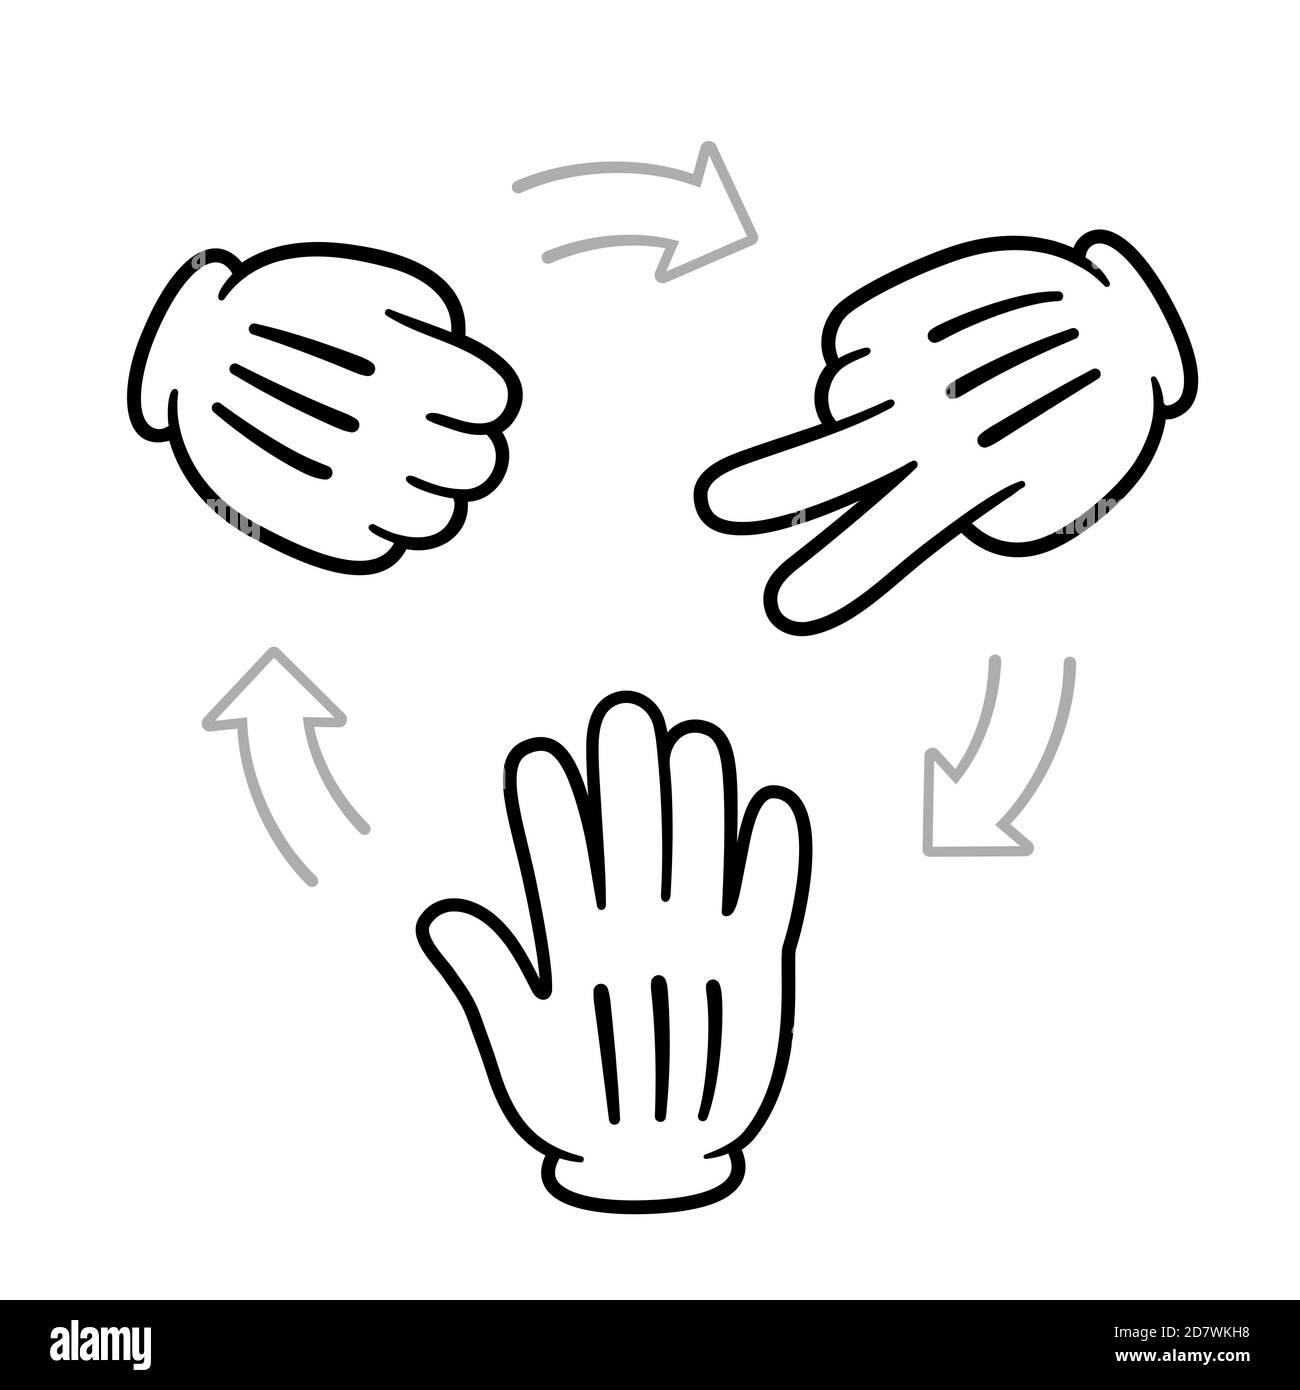 Rock Paper Scissors Spiel Diagramm. Handsymbole mit Pfeilen zeigen an, welche Geste gewinnt. Cartoon Handschuh Zeichnung, Vektor Clip Art Illustration. Stock Vektor